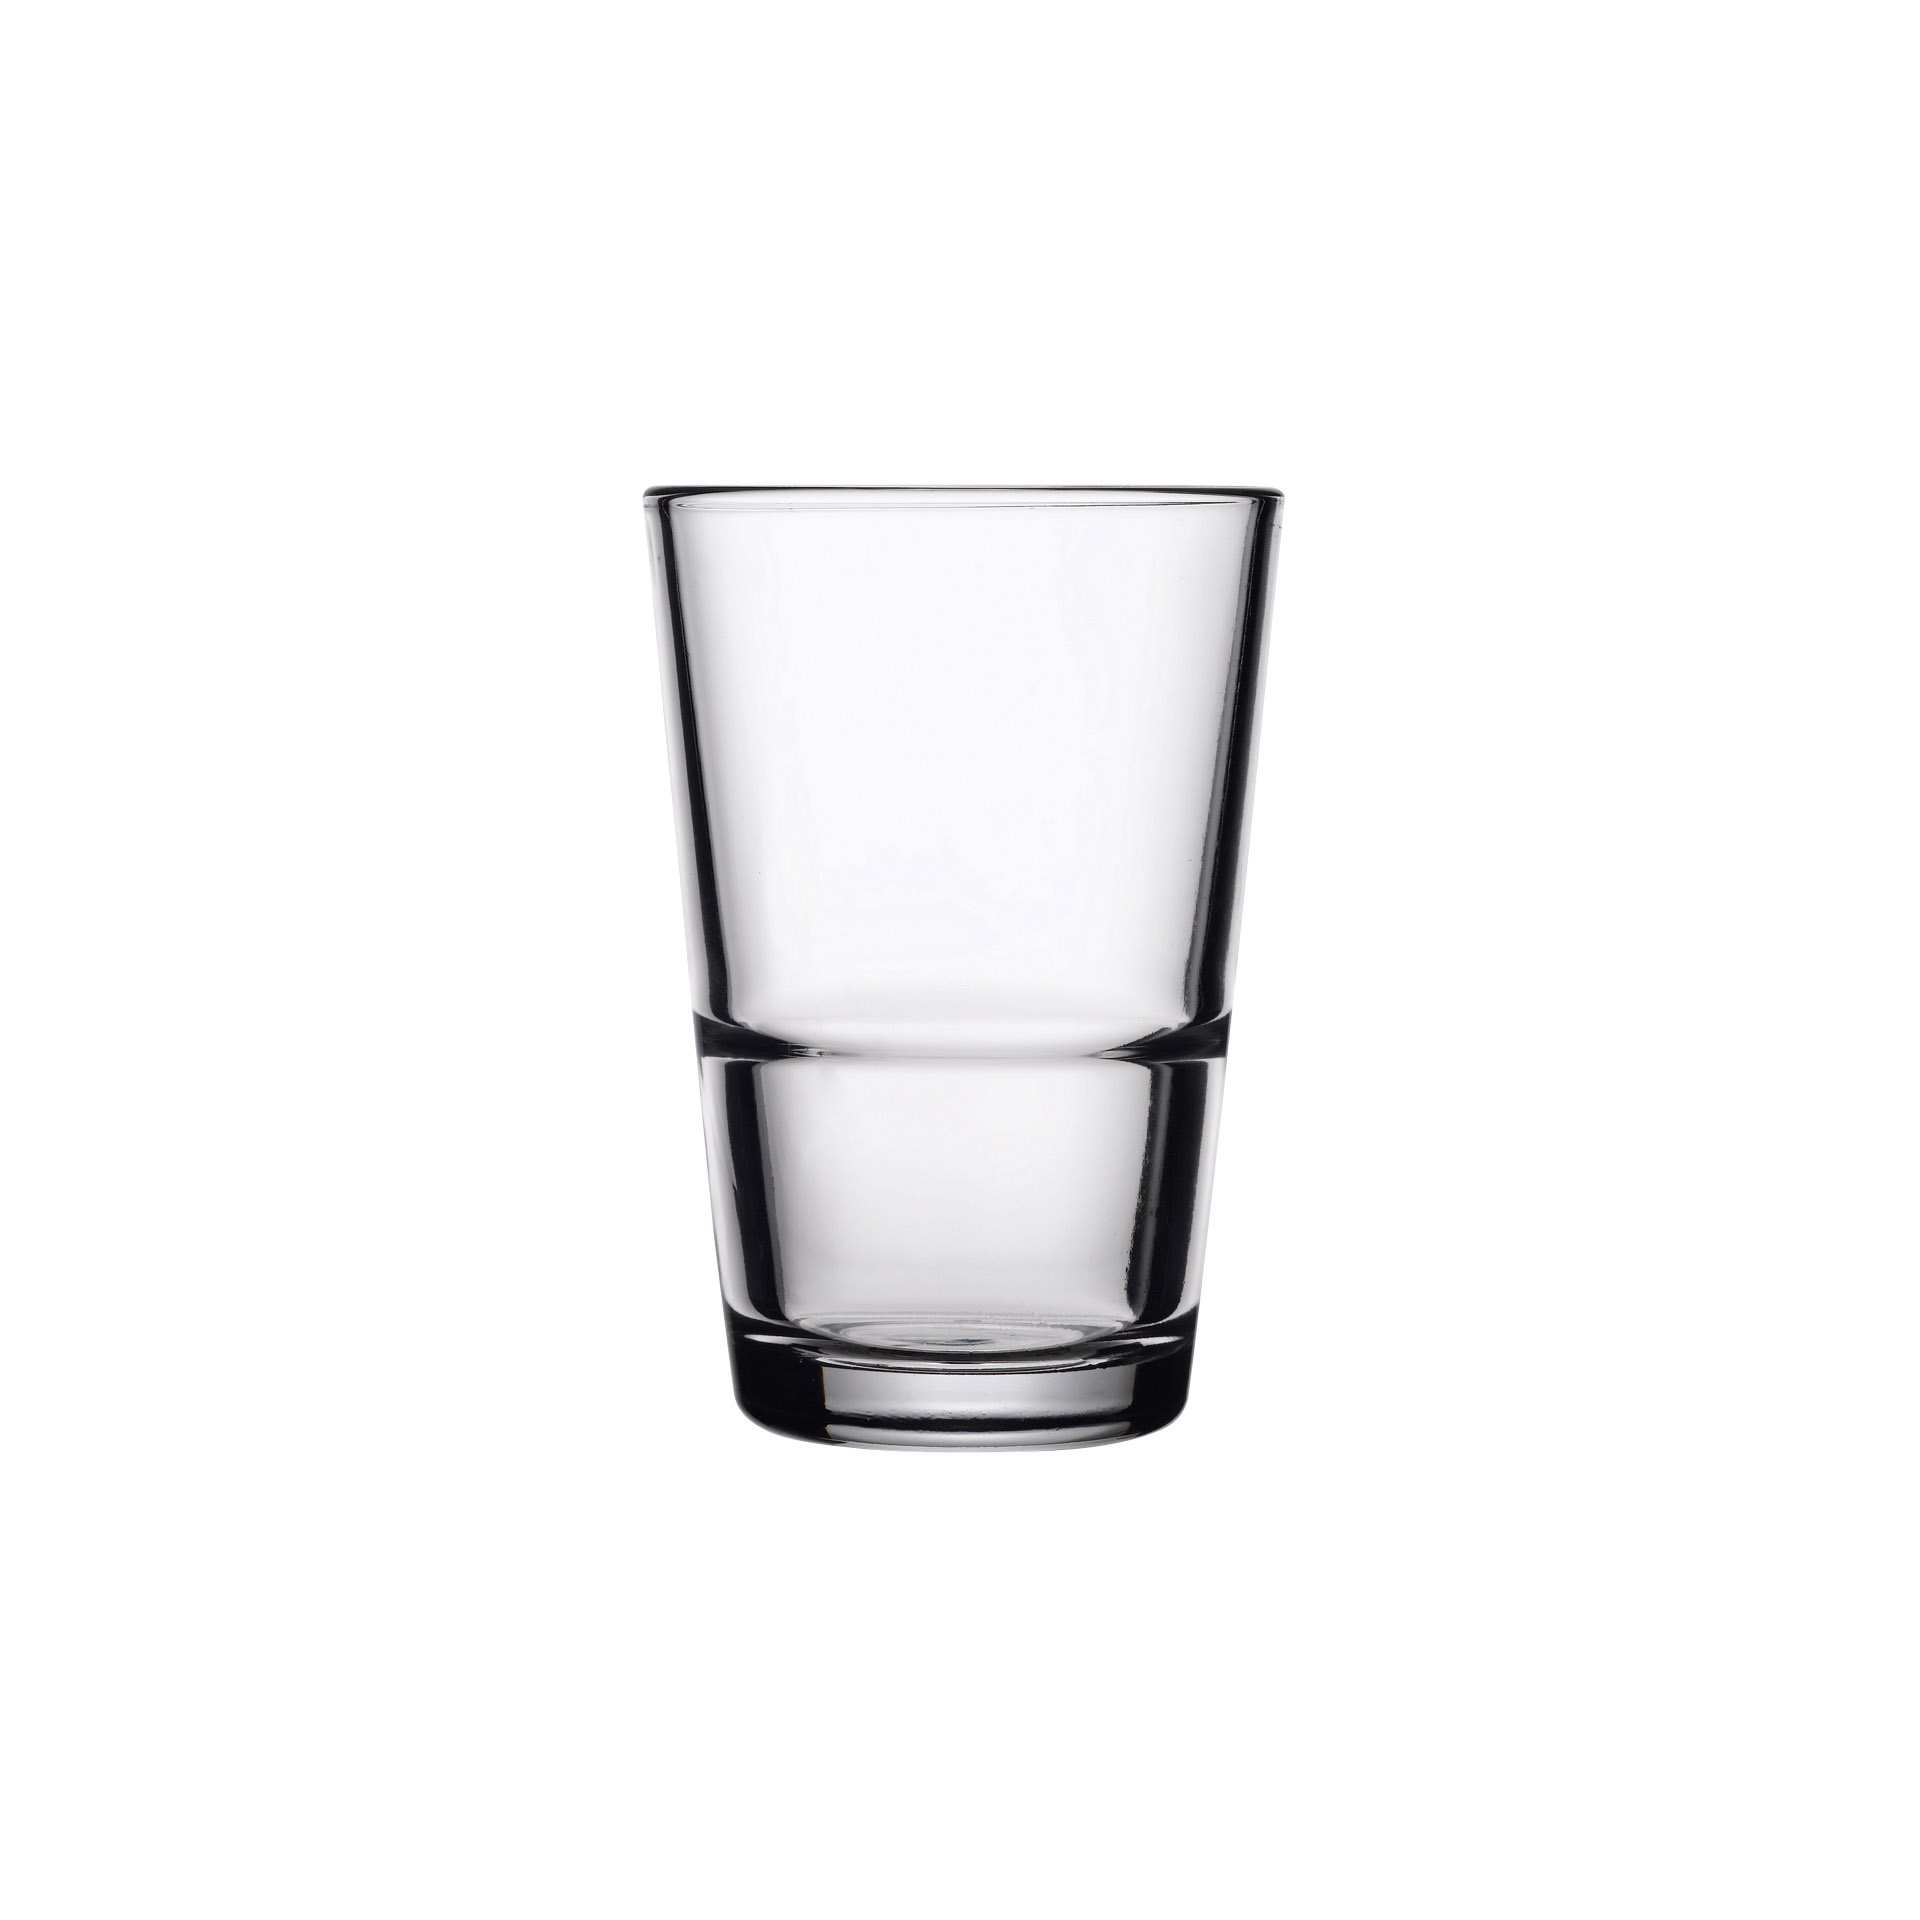 Wasserglas - Set á 12 Stück - Serie Grande-S - Höhe 10,0 cm - Ø oben / unten 6,85 / 4,8 cm - Inhalt 0,19 l - Glas - 52130-A